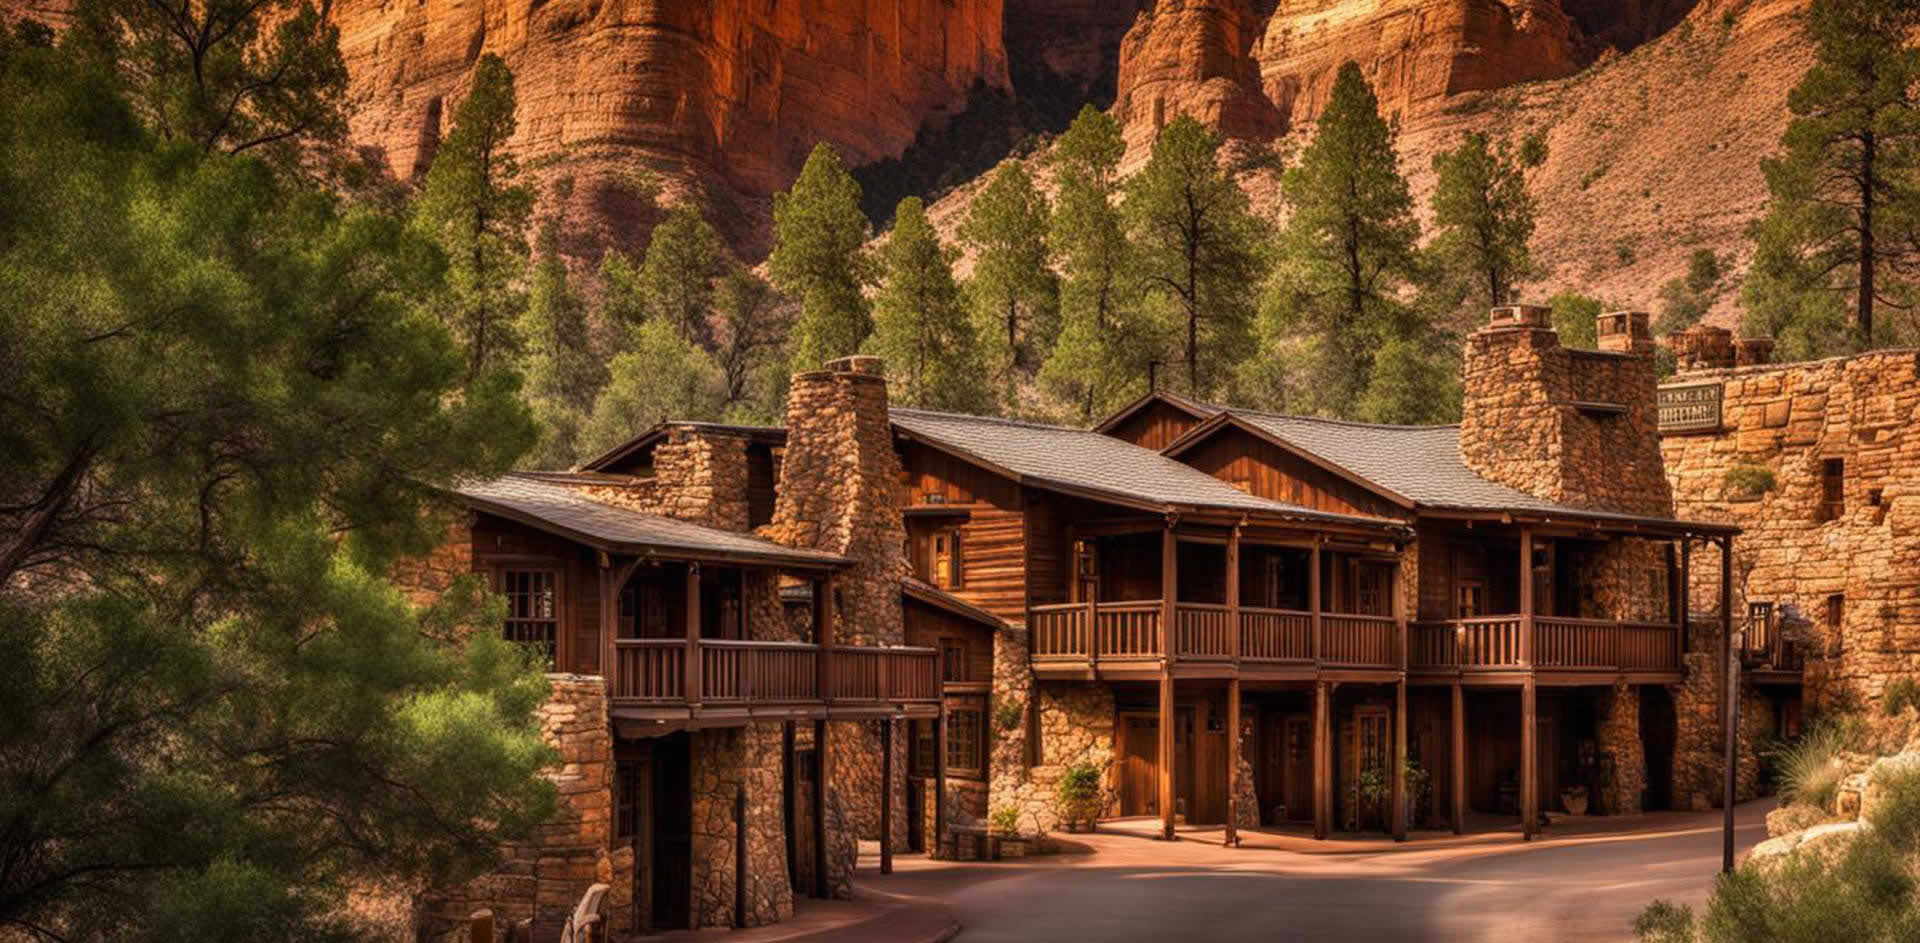 Grand Canyon Village